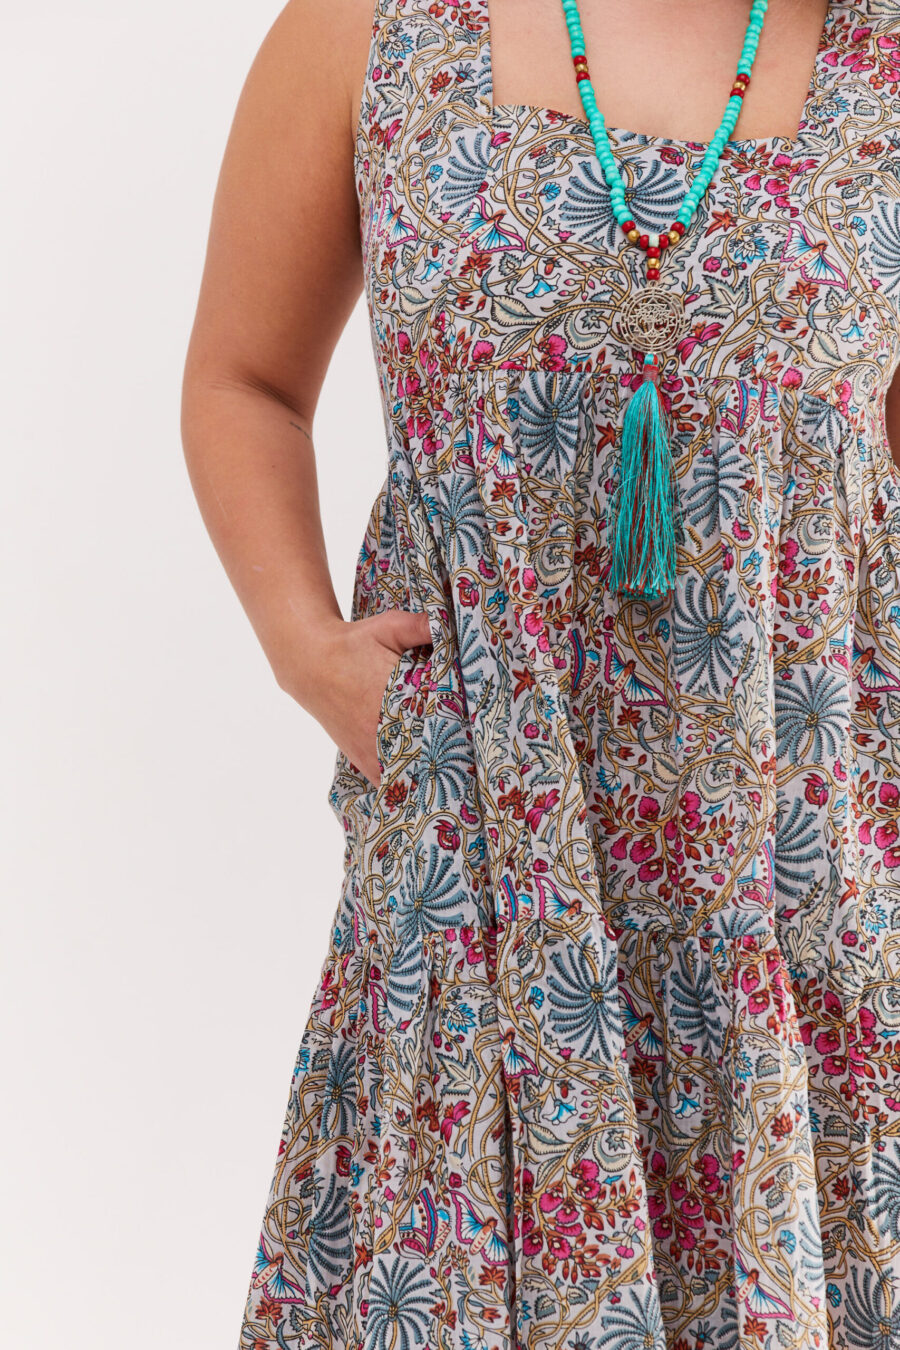 שמלת ליזי | שמלה בעיצוב ייחודי - הדפס ליבי, הדפס פרחוני בגוונים עדינים על רקע שמלה אפורה